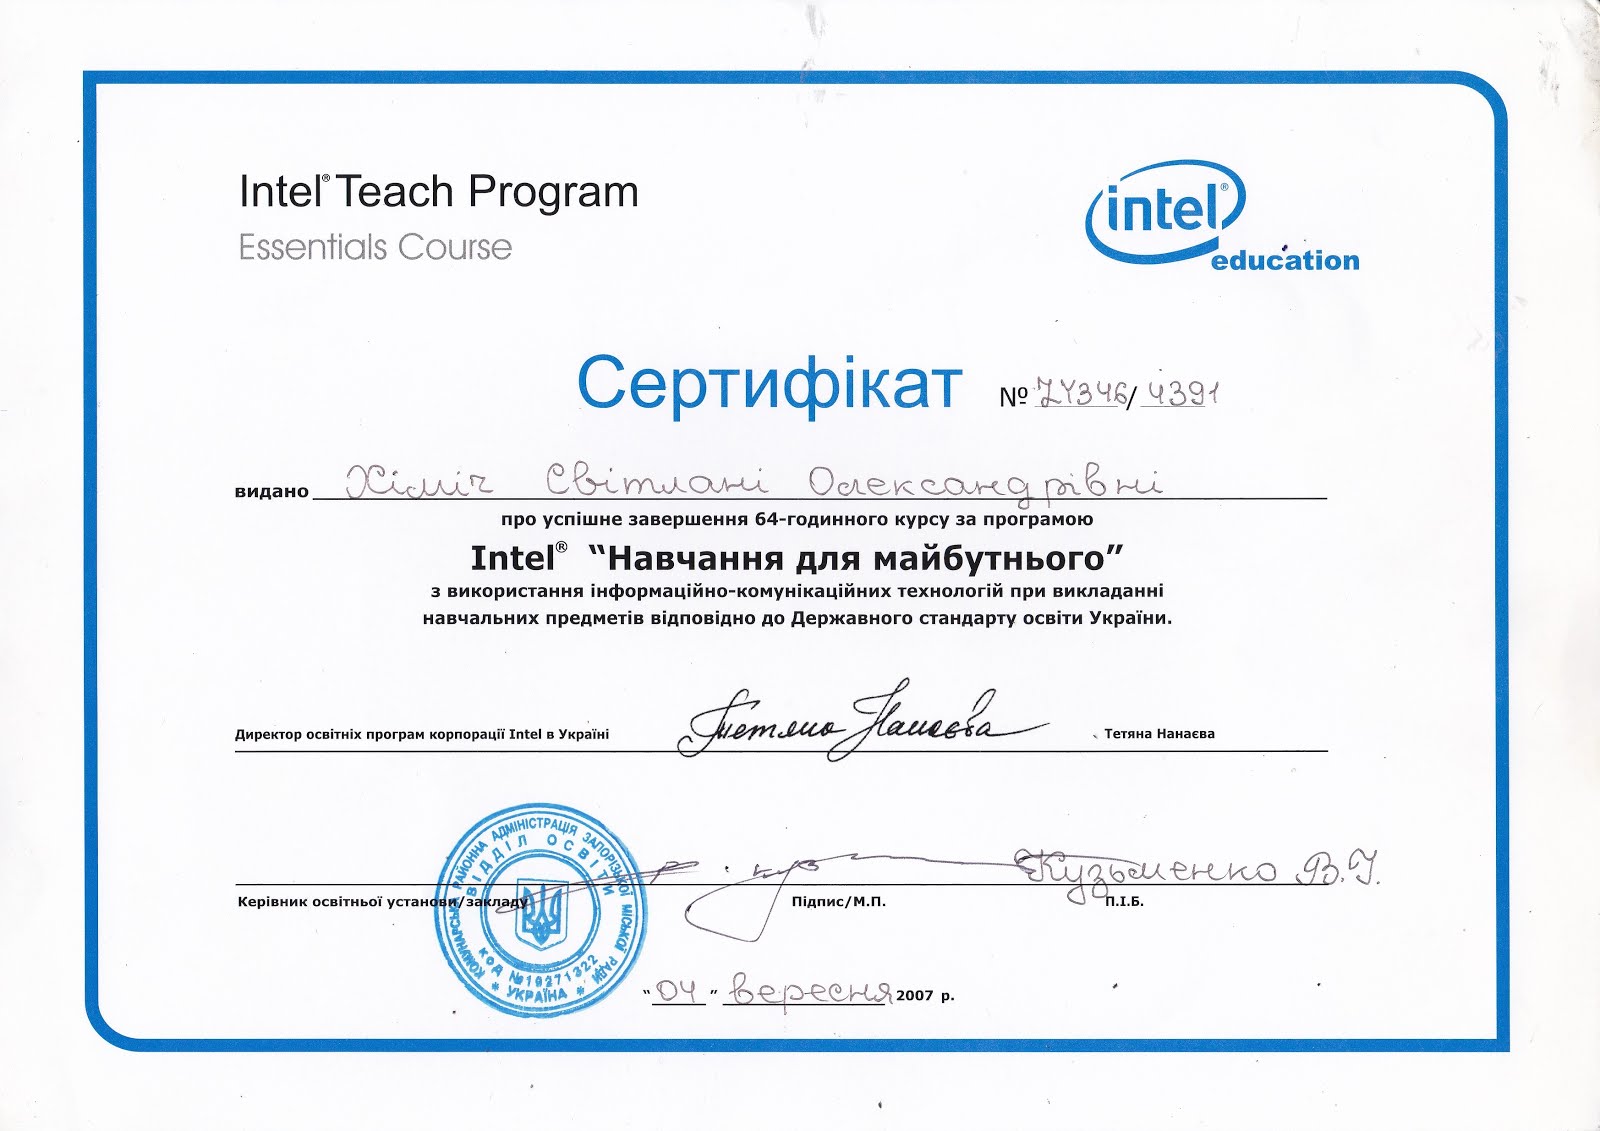 Сертификат Intel "Навчання майбутнього"